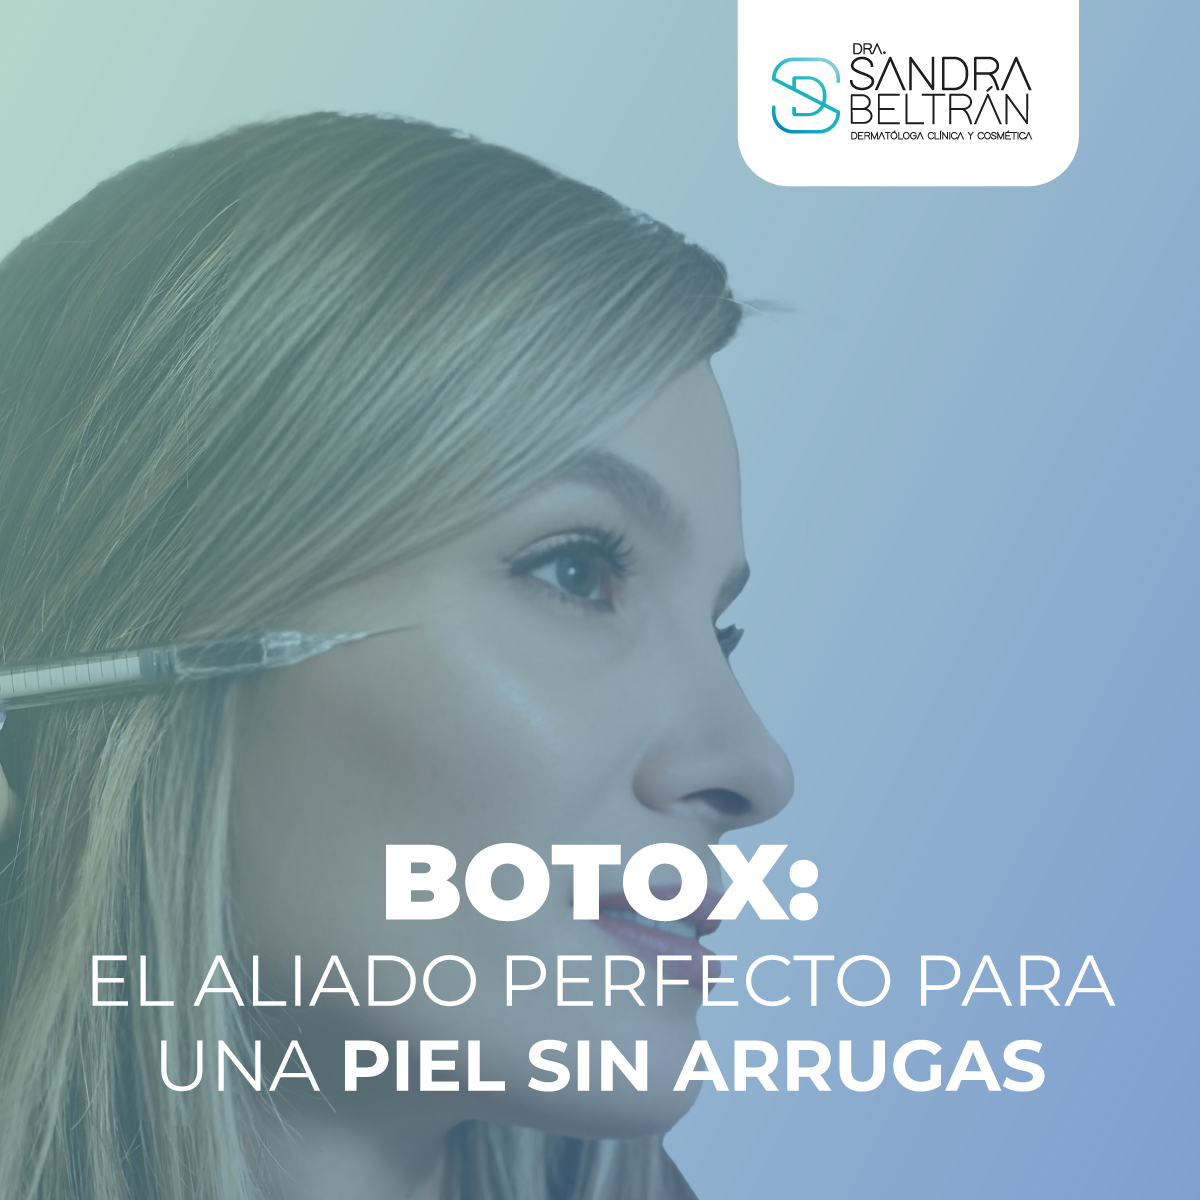 Botox: El aliado perfecto para una piel sin arrugas